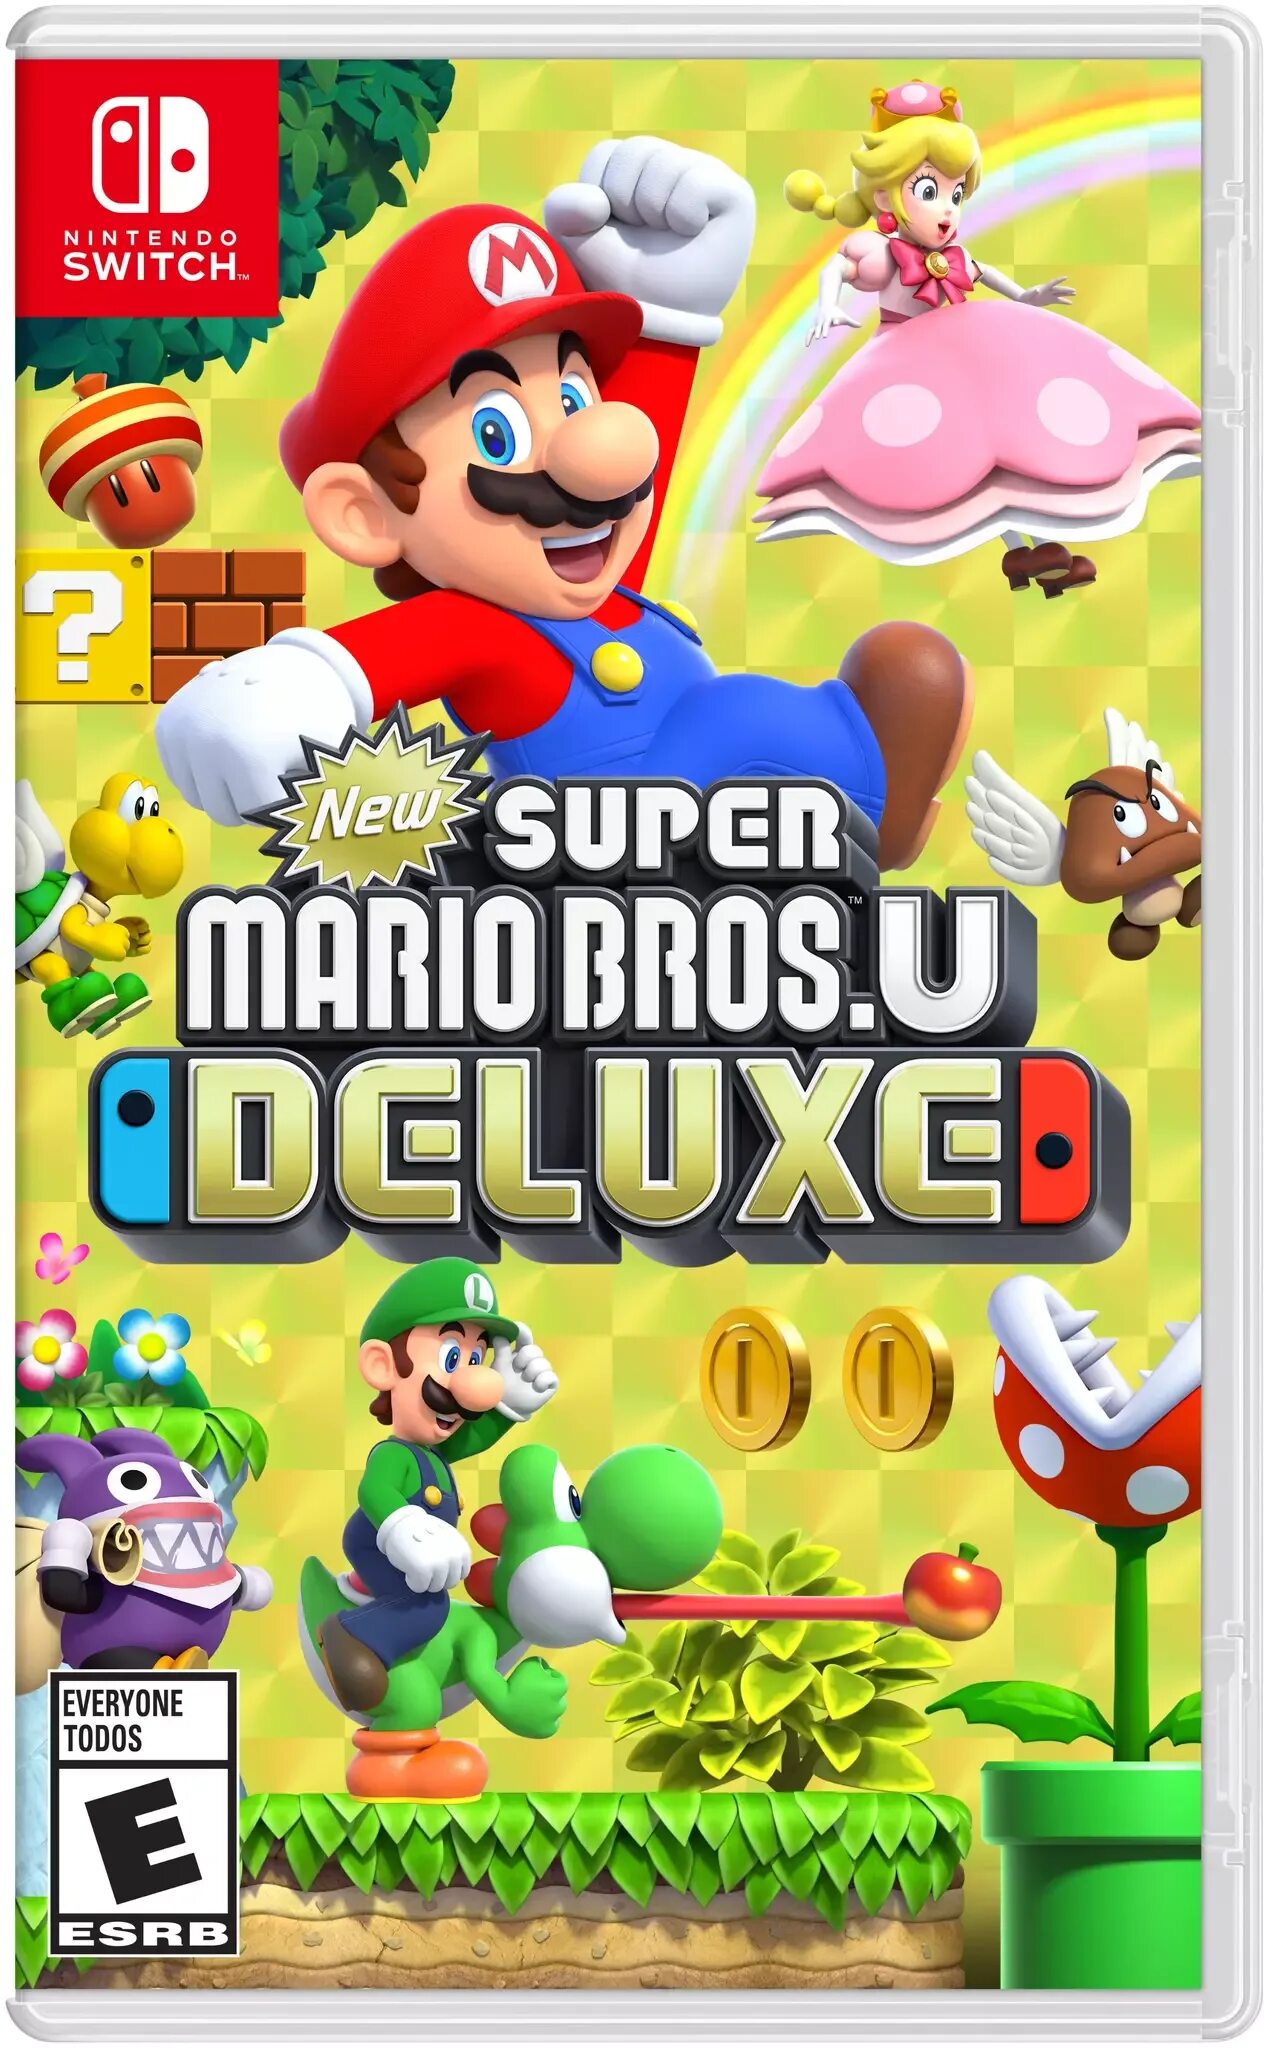 Super Mario Bros u Deluxe Nintendo Switch. New super Mario Bros. U Deluxe Switch. Марио БРОС на Нинтендо свитч. New super Mario Bros. U Deluxe.